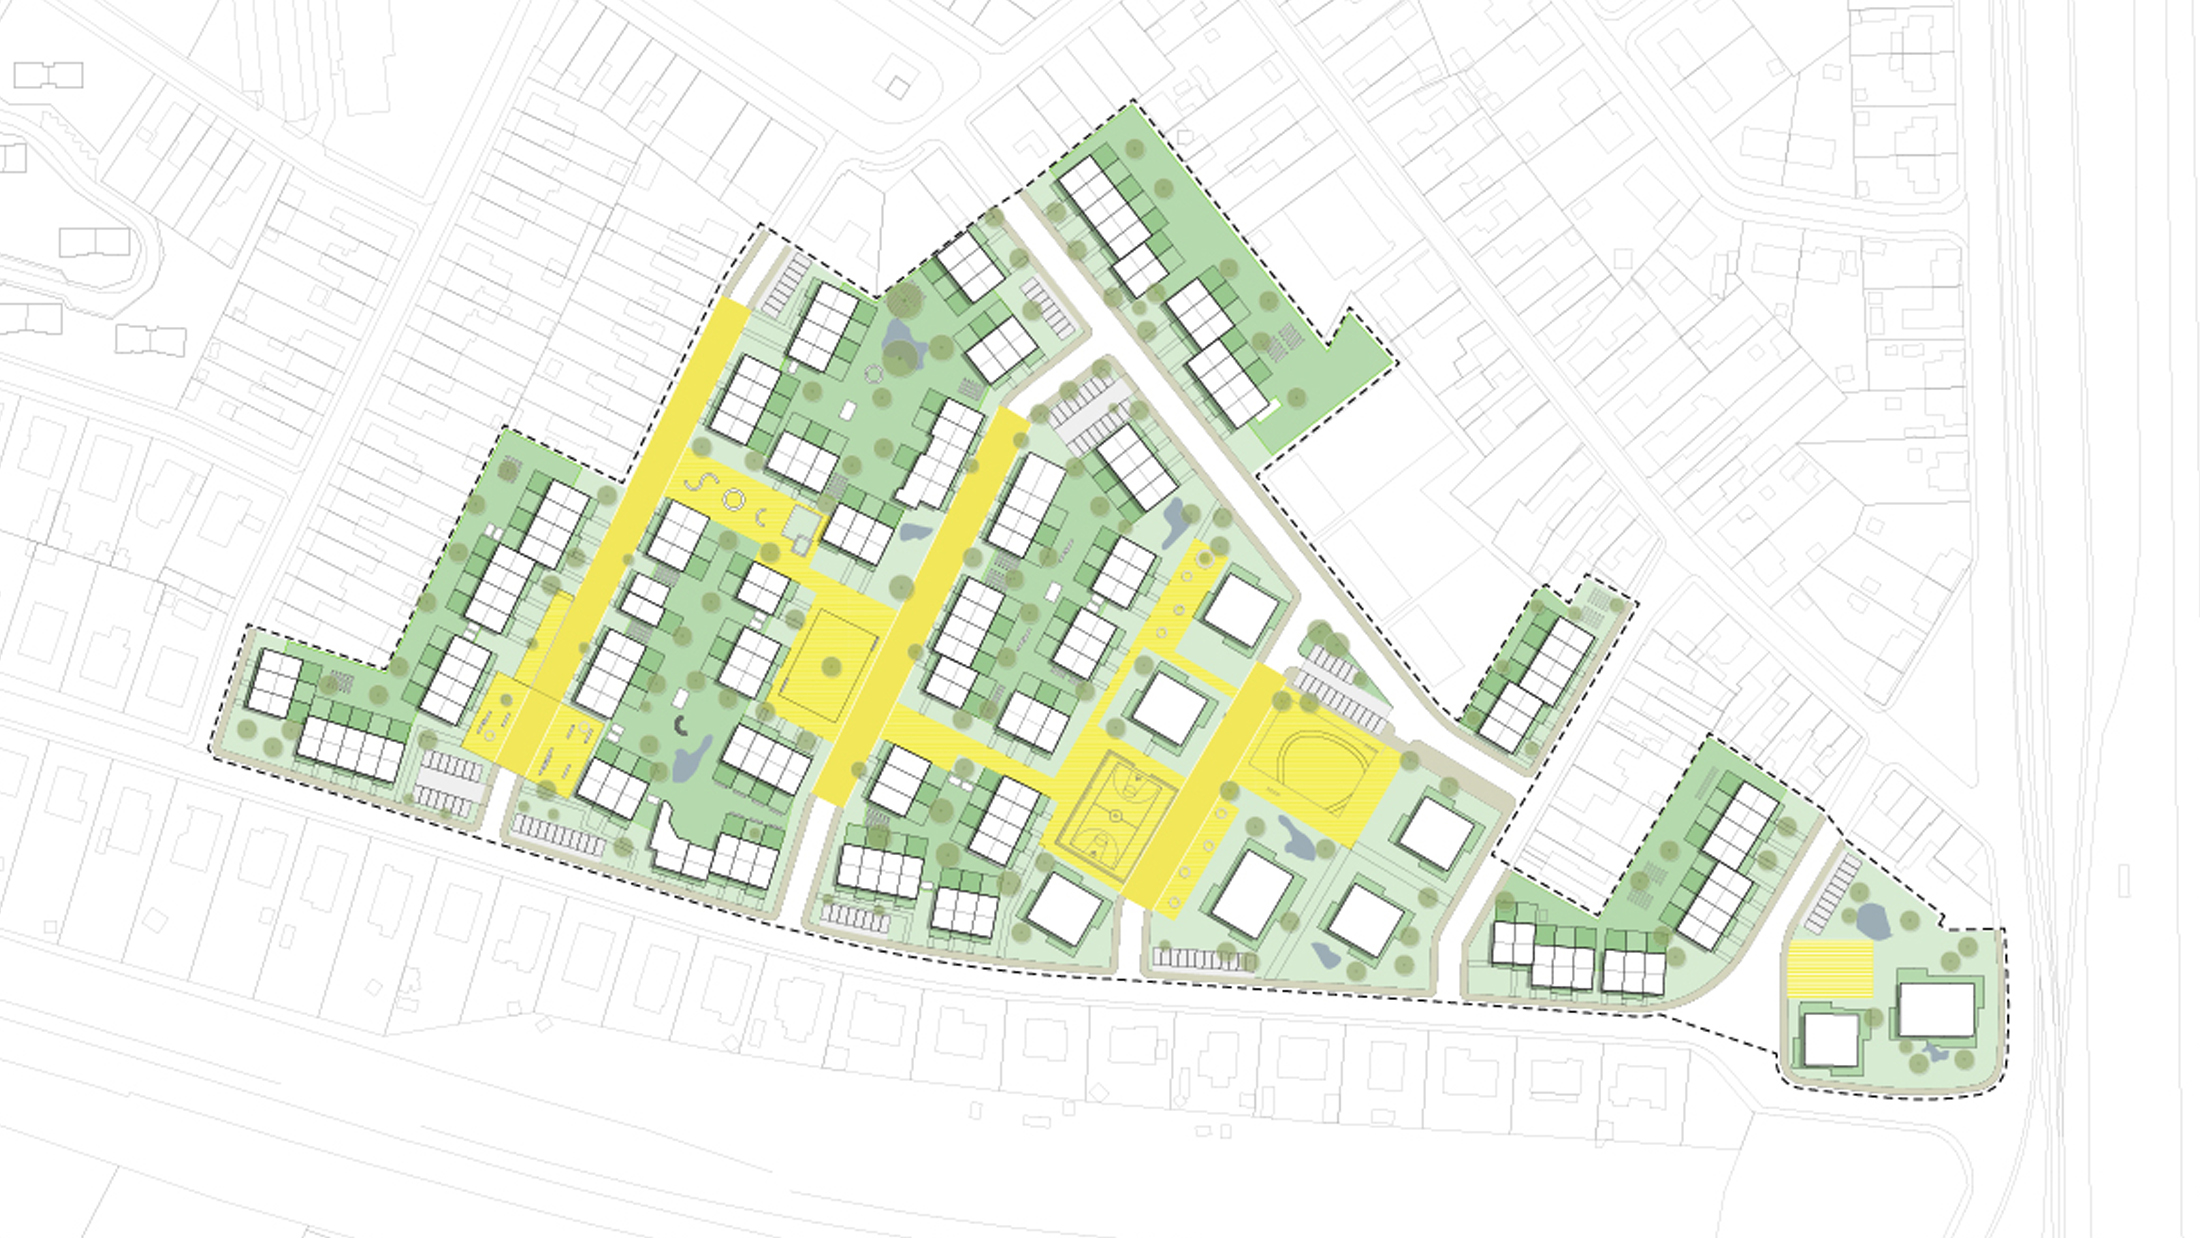 Debbautshoek Housing, designed by NOAHH | Network Oriented Architecture